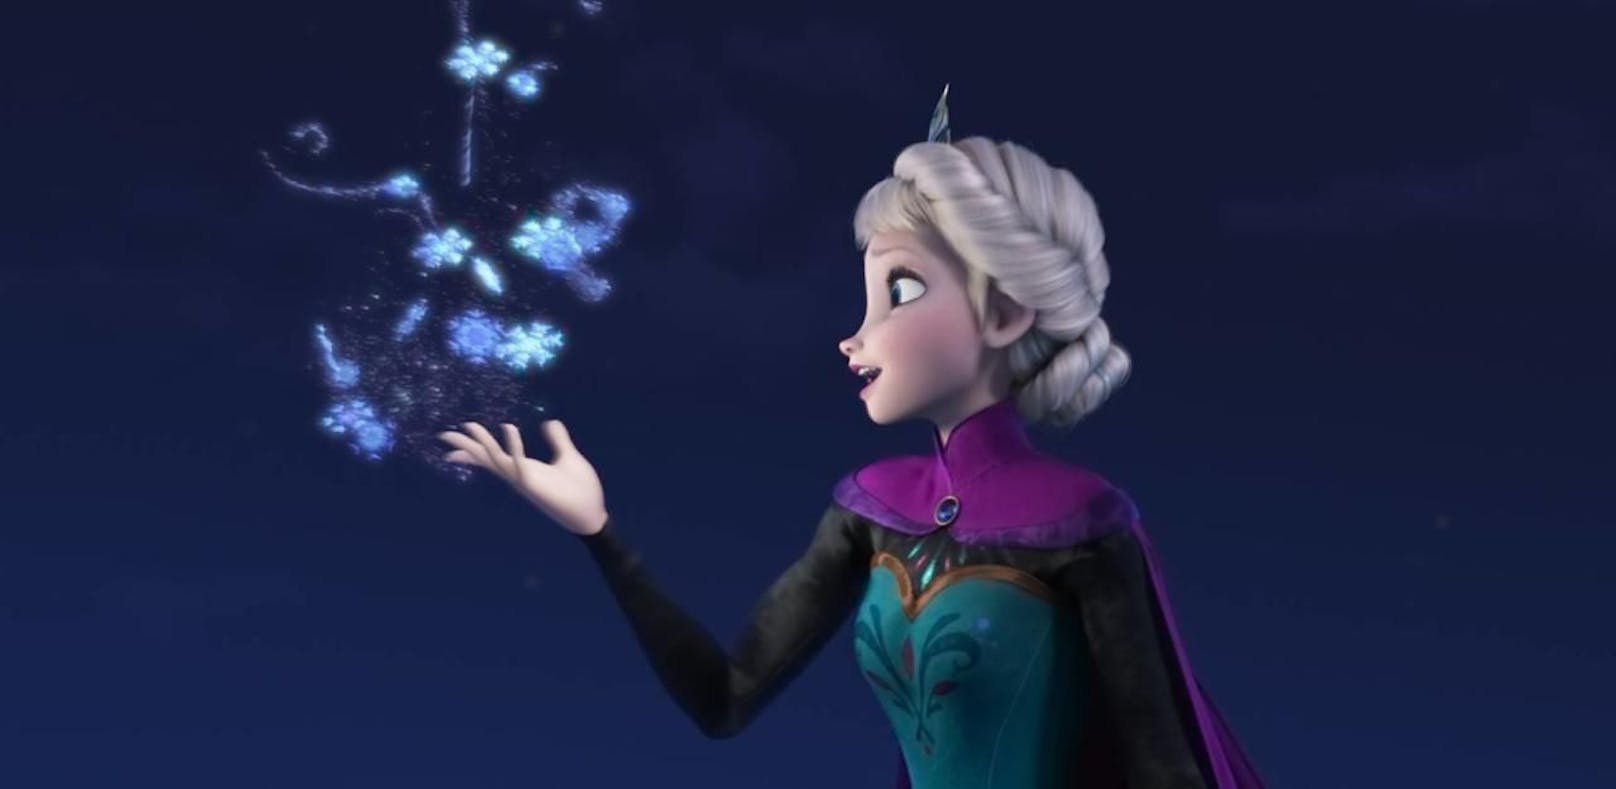 "Let It Go" - Sänger klagt Disney wegen Plagiat